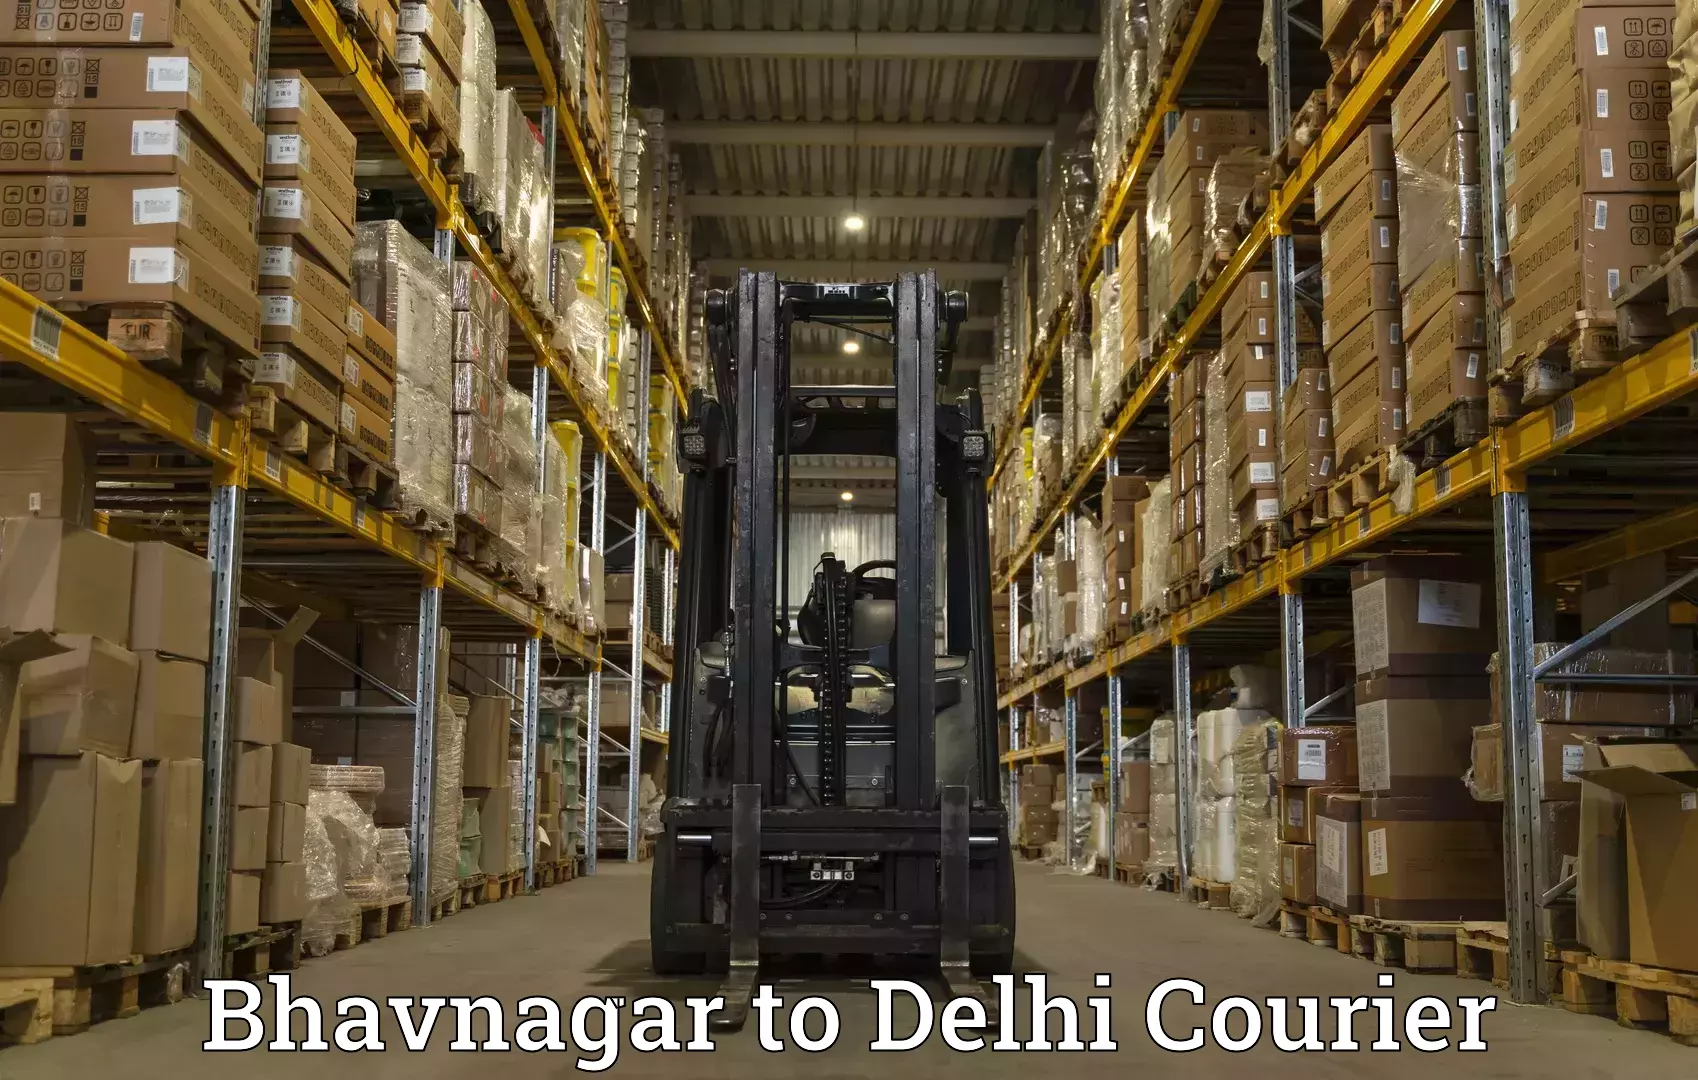 Modern courier technology in Bhavnagar to Jawaharlal Nehru University New Delhi